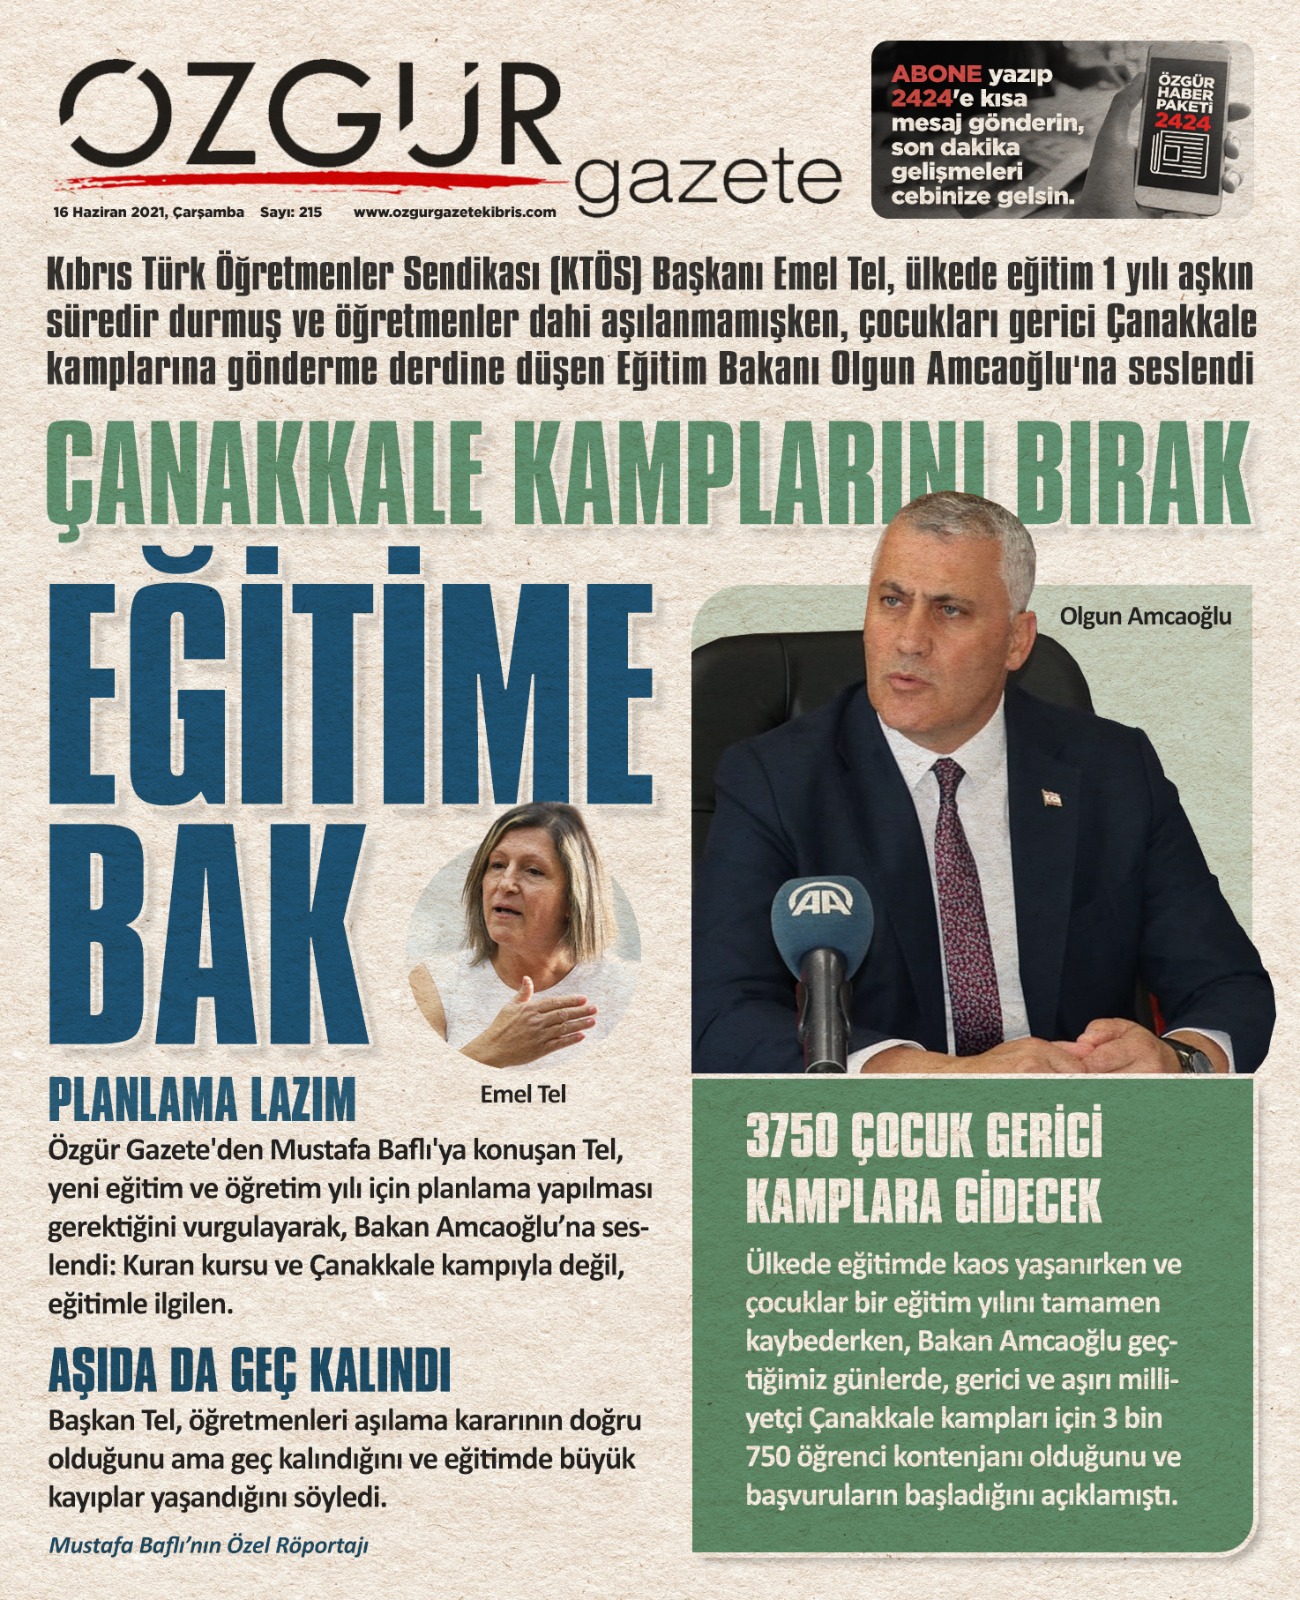 ozgur_gazete_kibris_egitibakani_yuz_yuze